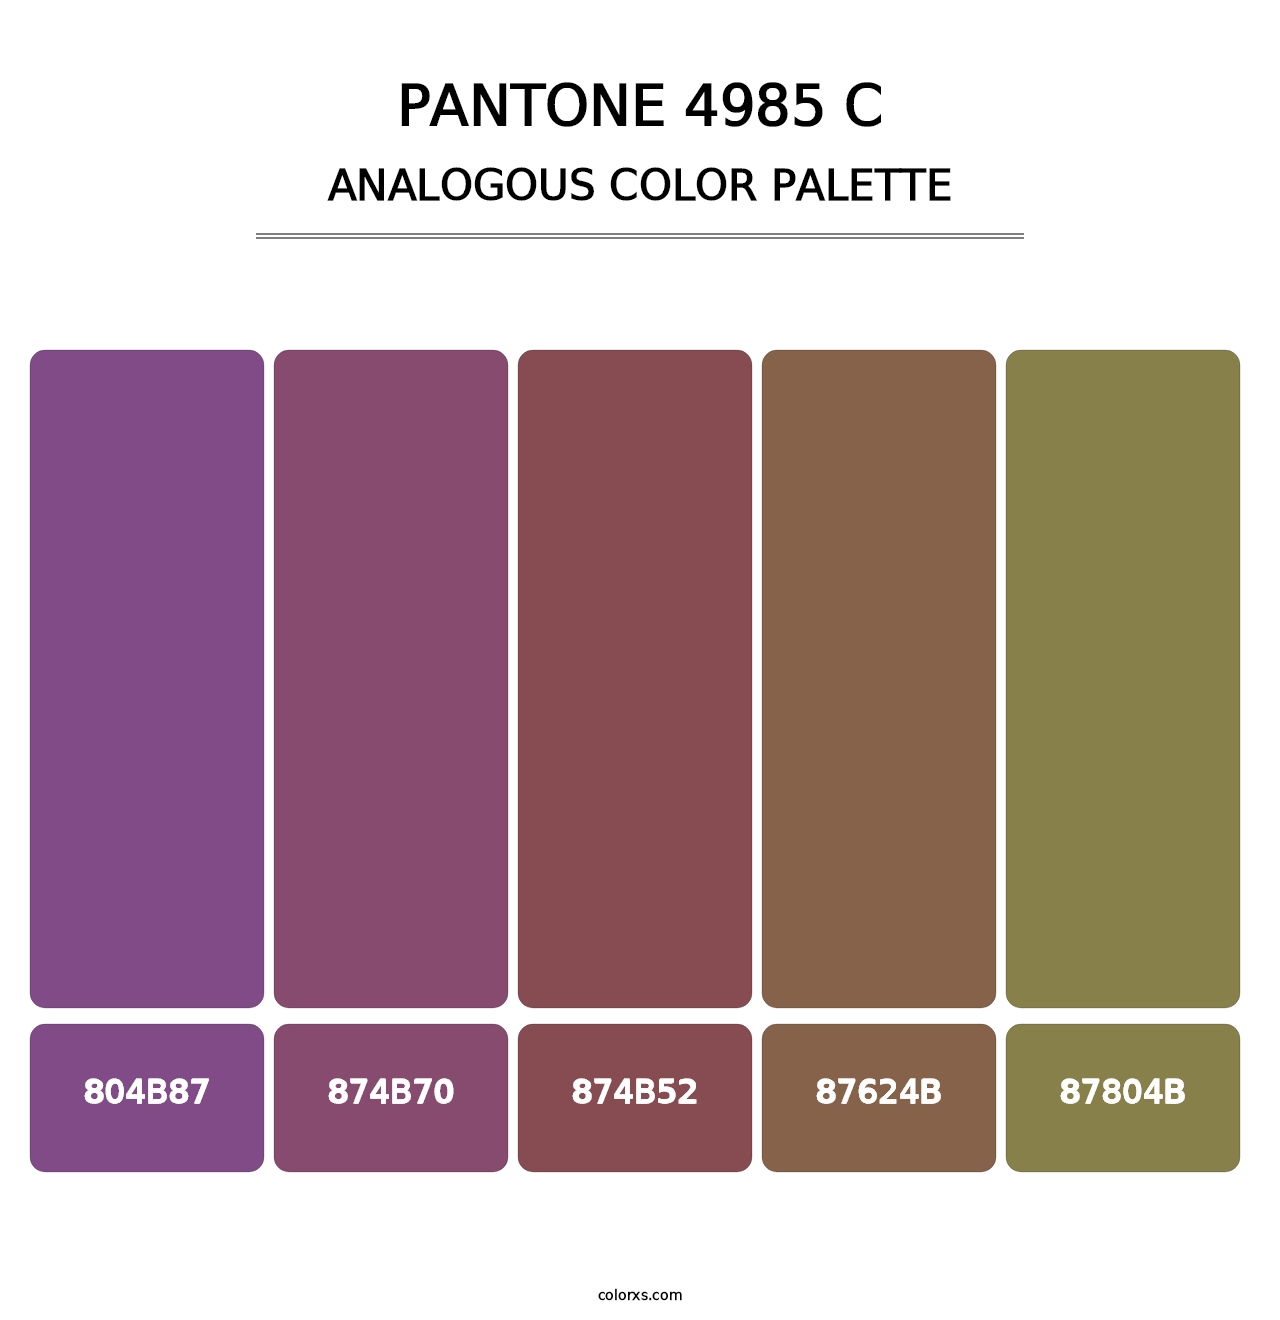 PANTONE 4985 C - Analogous Color Palette